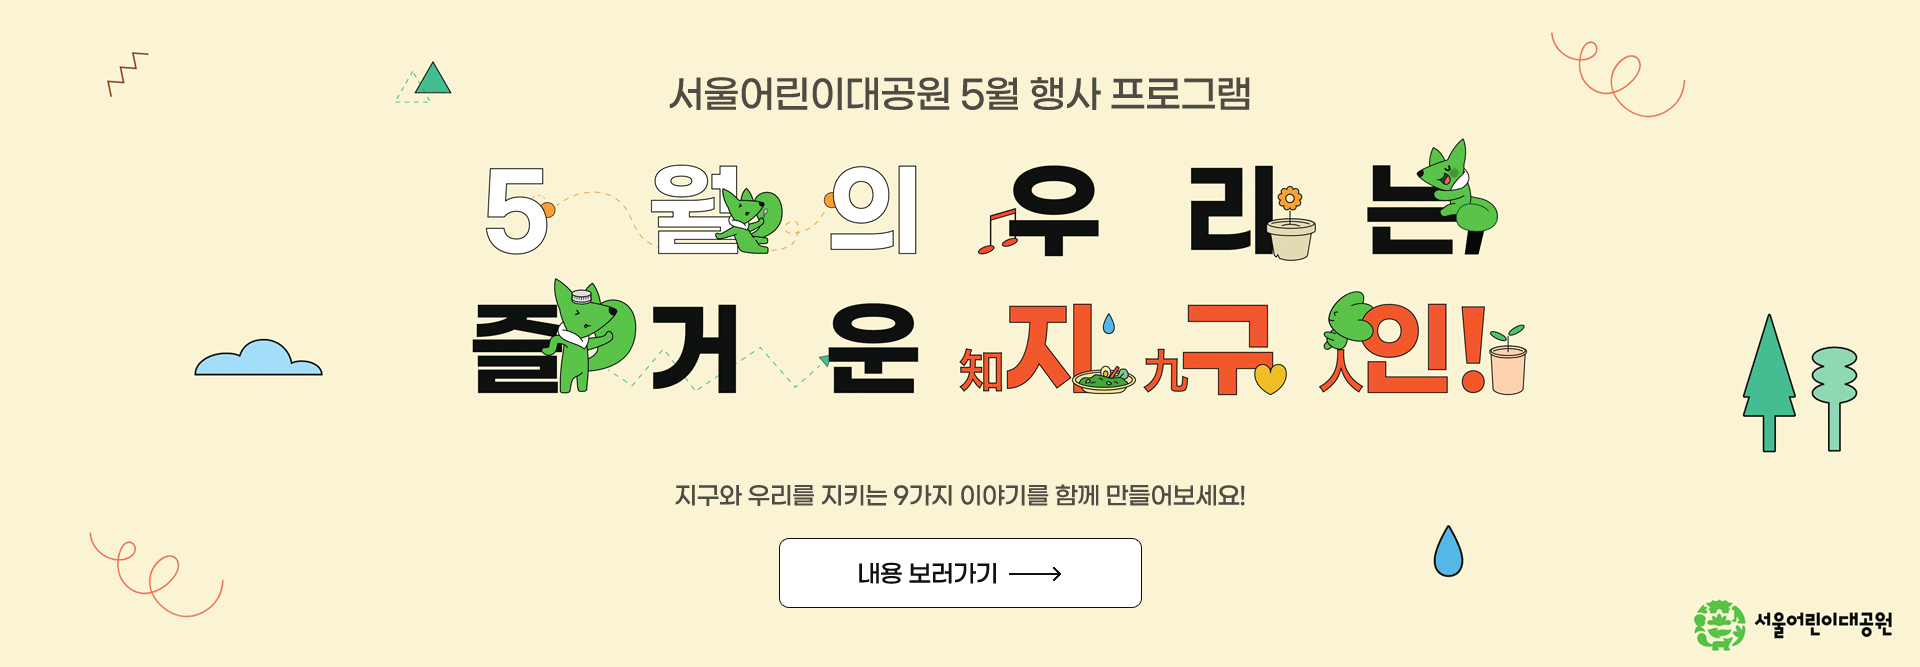 서울어린이대공원 5월 행사 프로그램
“5월의 우리는, 
즐거운 지(知)구(九)인(人)!”
지구와 우리를 지키는 9가지 이야기를 함께 만들어보세요!

내용 보러가기